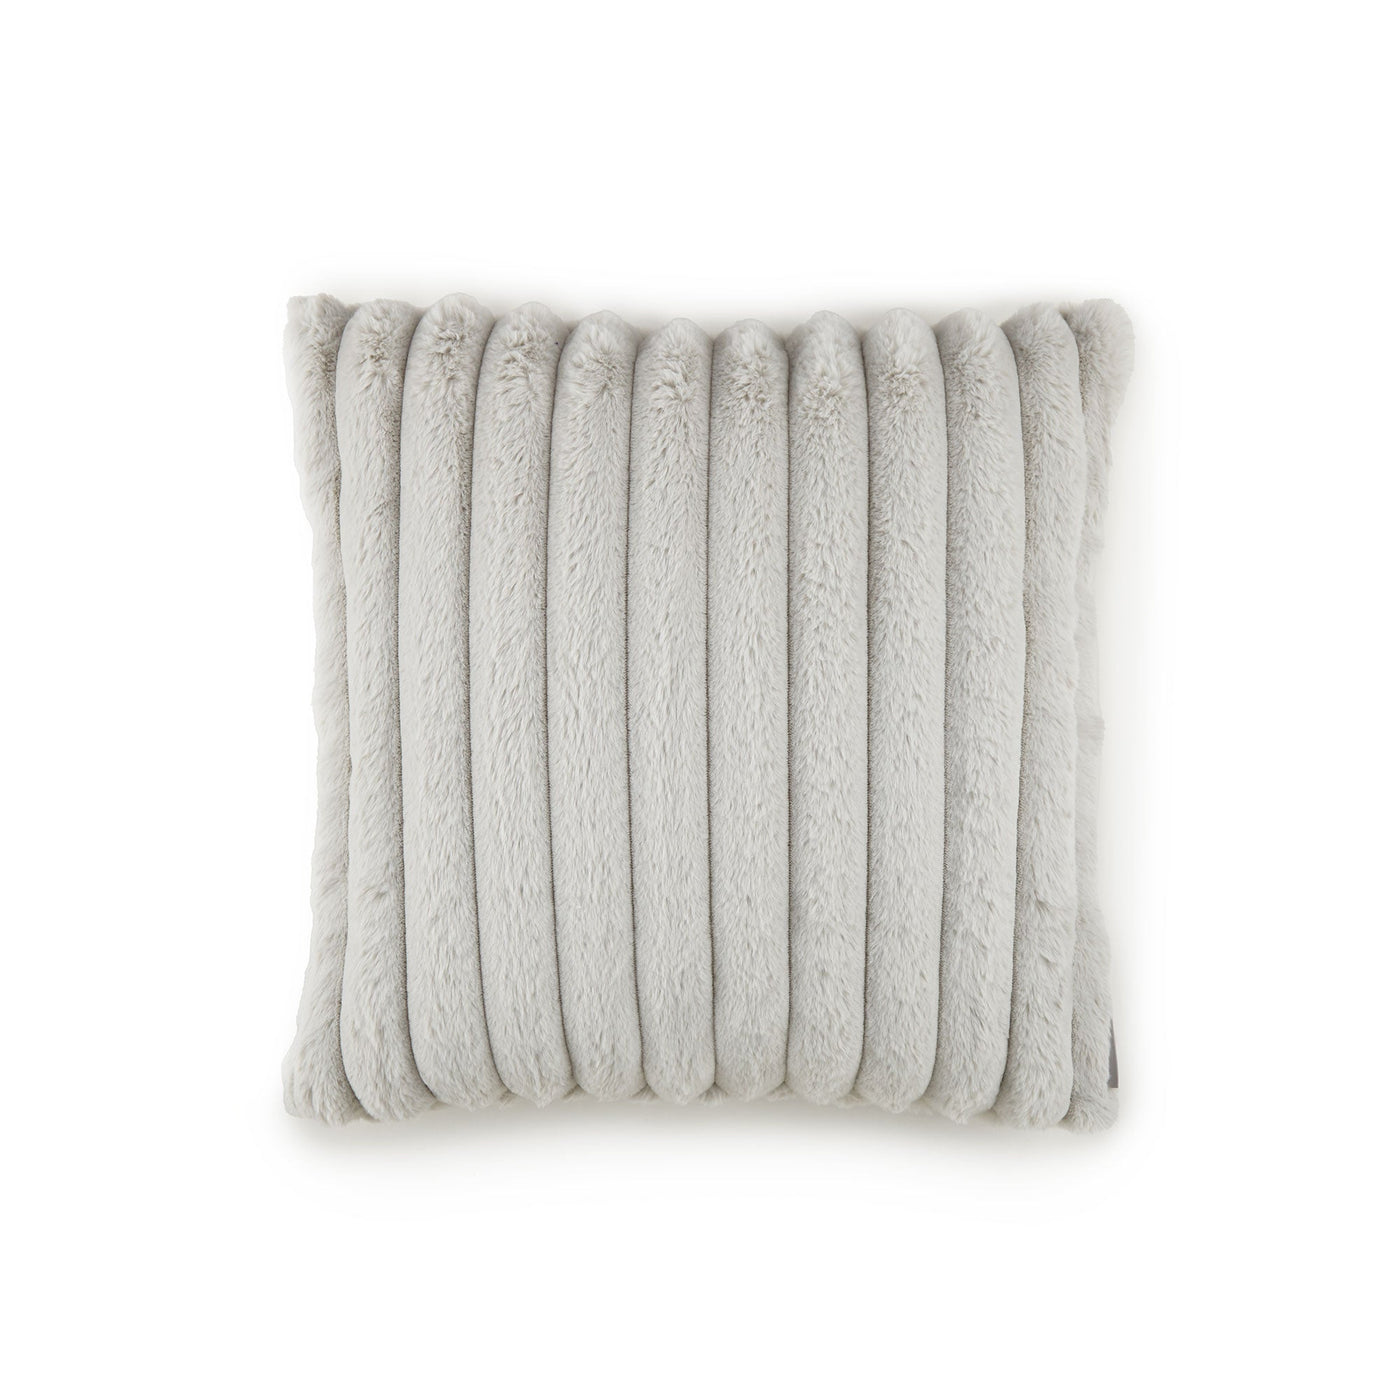 Mondo Grey Small Square Pillow (22x22)